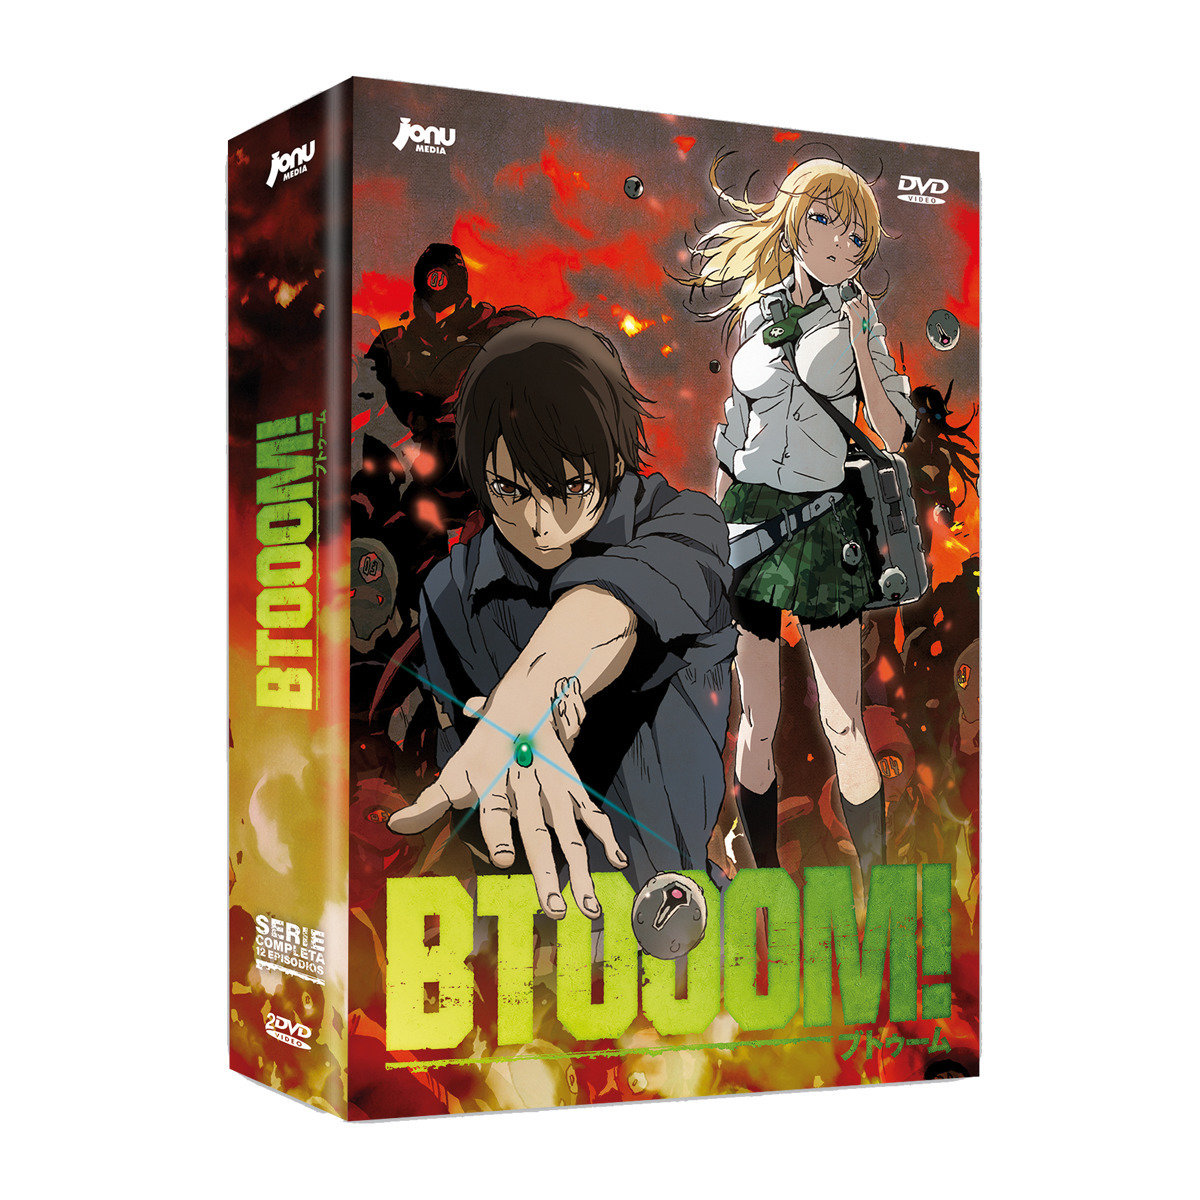 Btooom! (DVD)